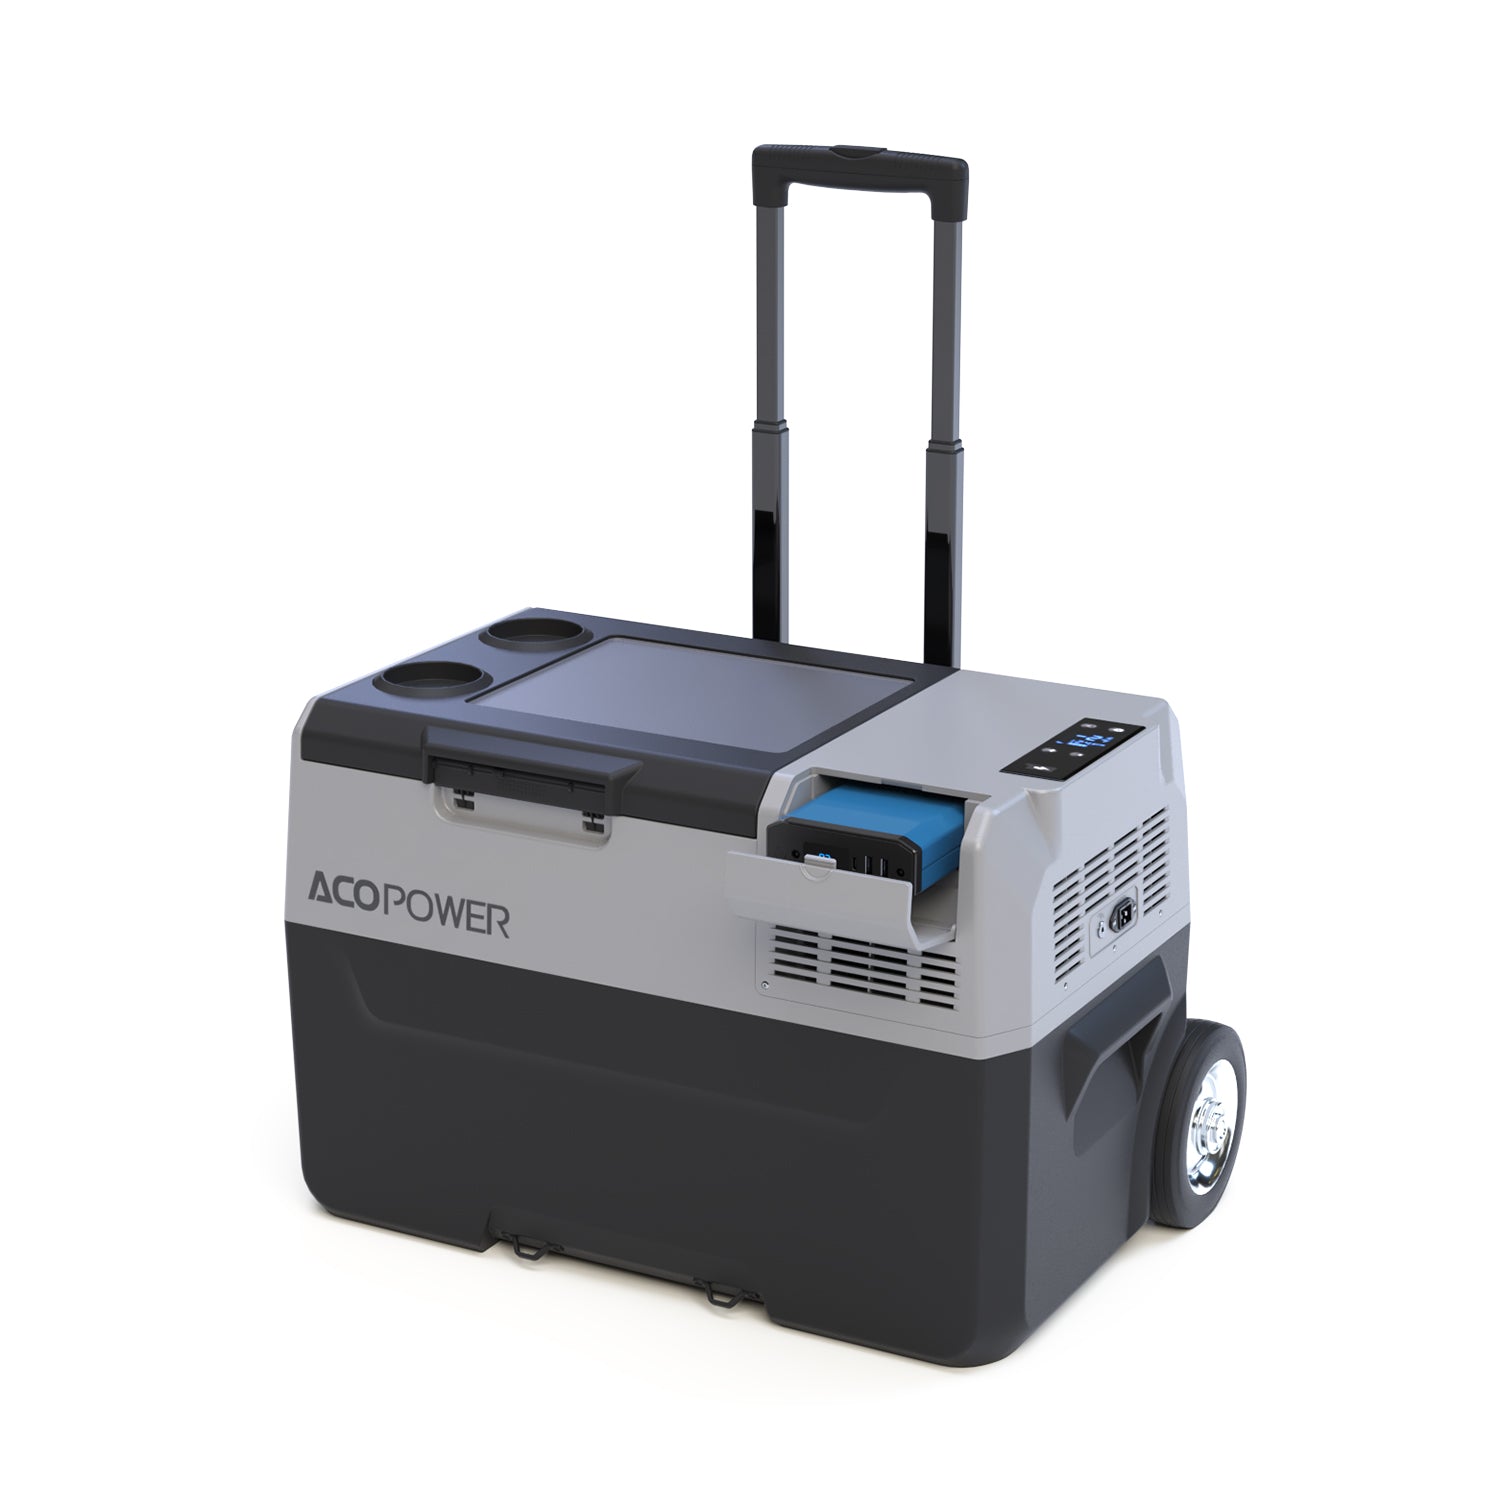 LiONCooler Pro Portable Solar Fridge Freezer, 32 Quarts